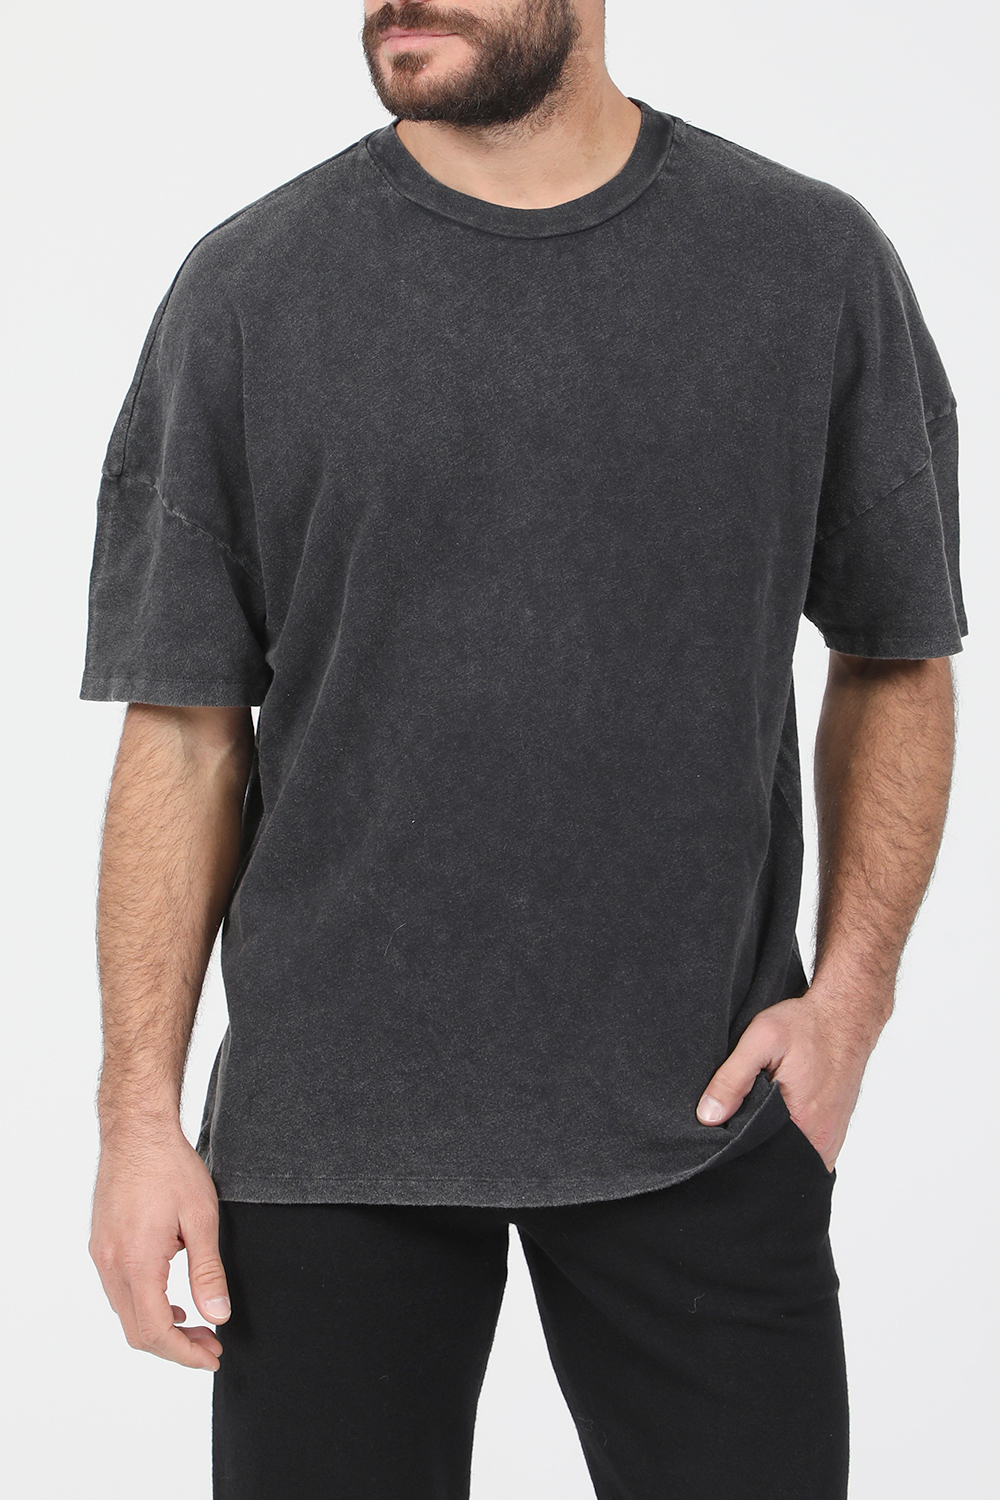 Ανδρικά/Ρούχα/Μπλούζες/Κοντομάνικες AMERICAN VINTAGE - Ανδρικό t-shirt AMERICAN VINTAGE ανθρακί